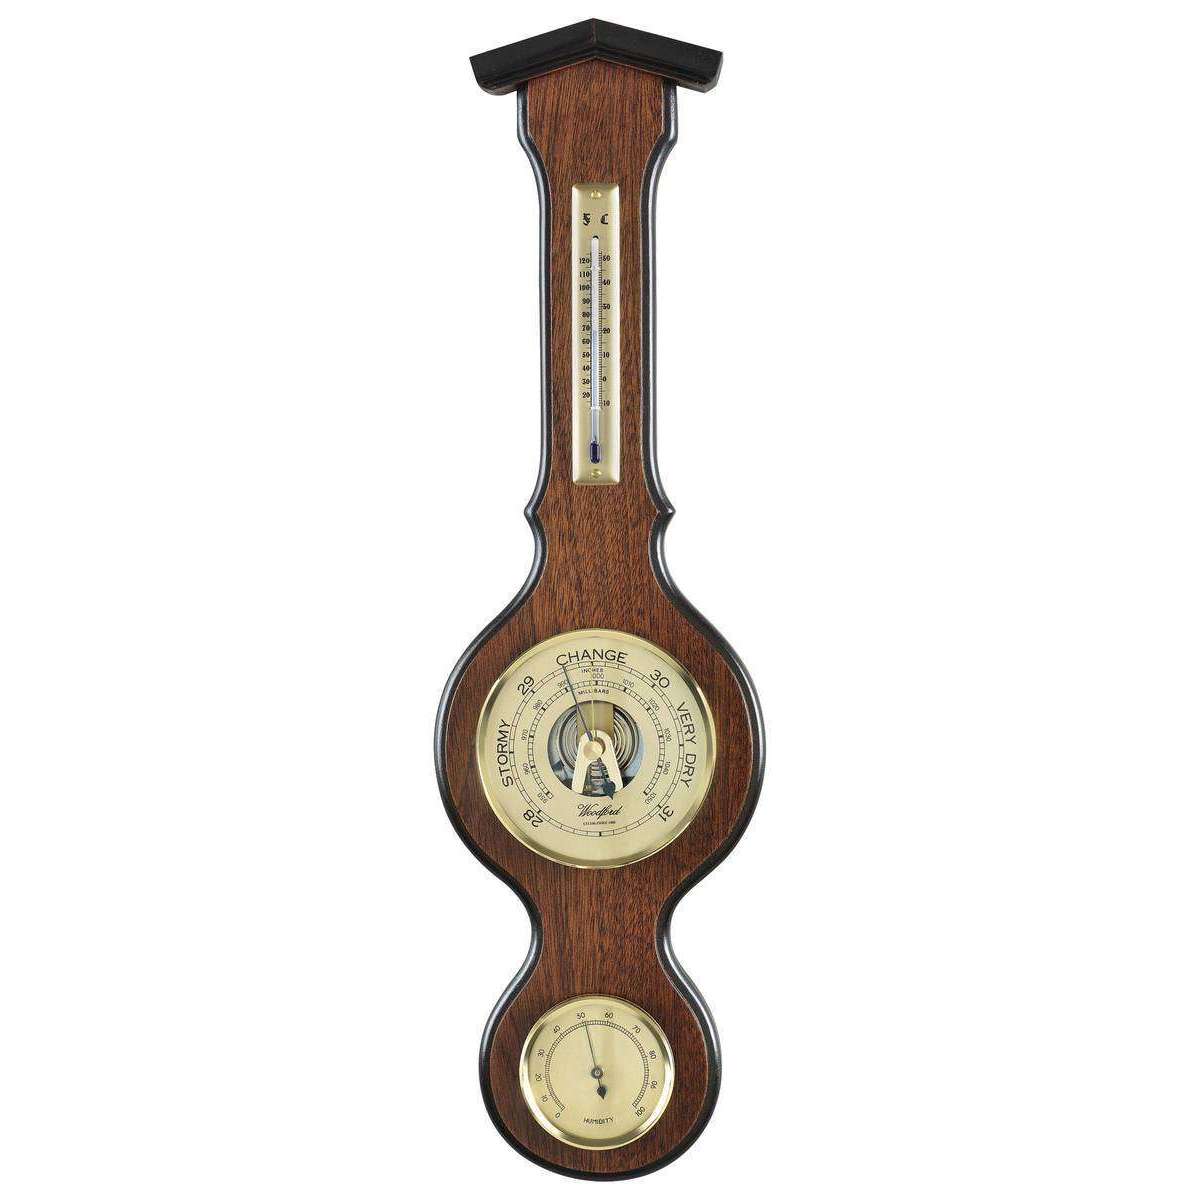 Baromètre-thermomètre-hygromètre en bois de chêne